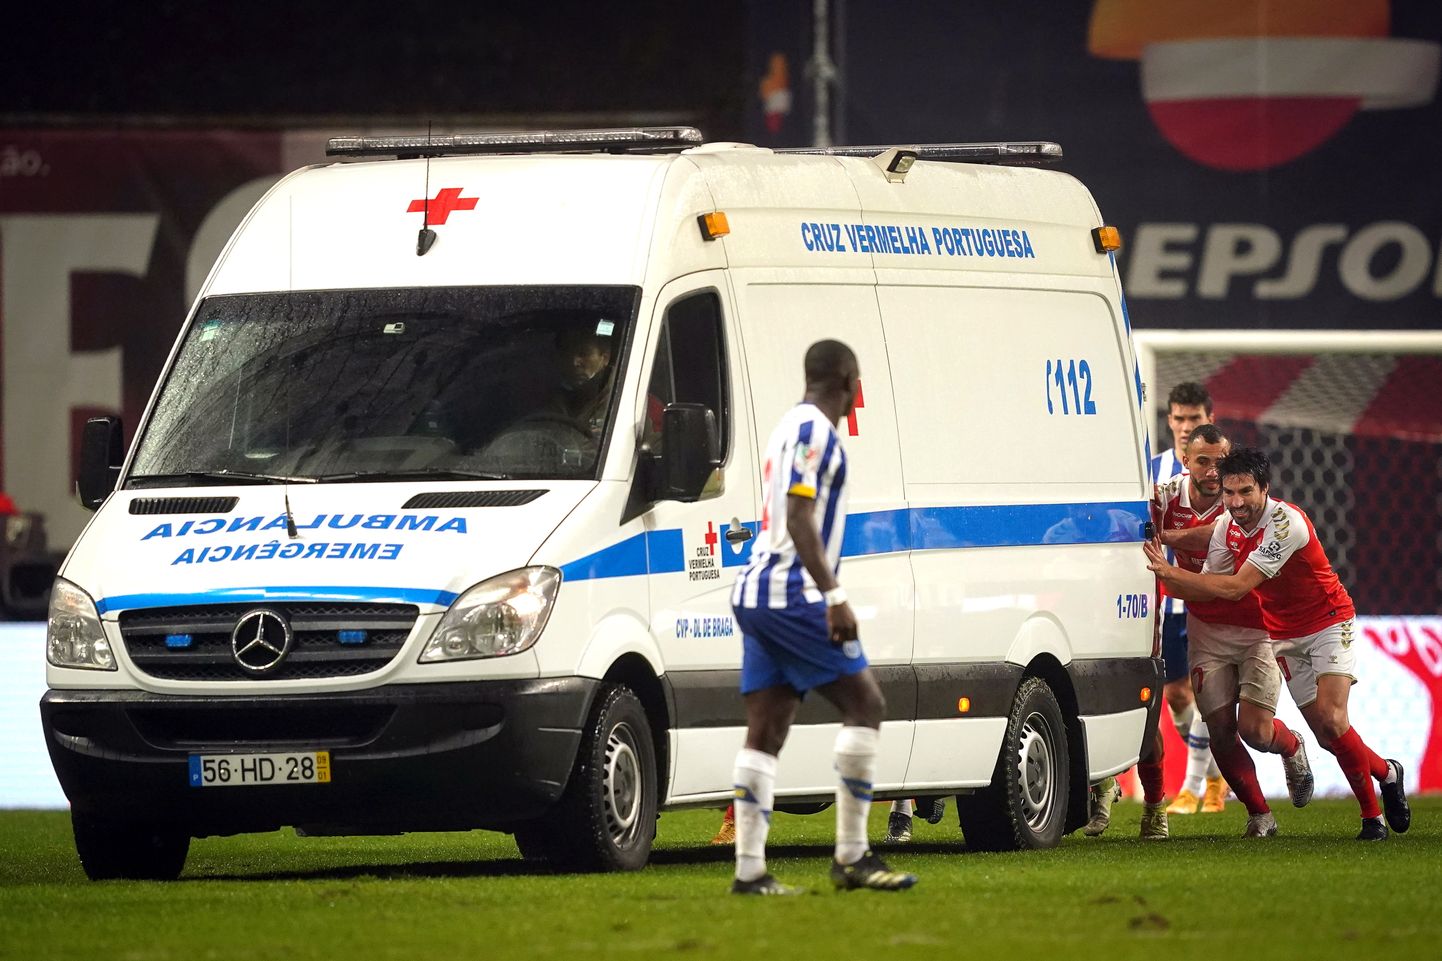 Braga ja Porto mängijad kiirabiautot lükkamas.